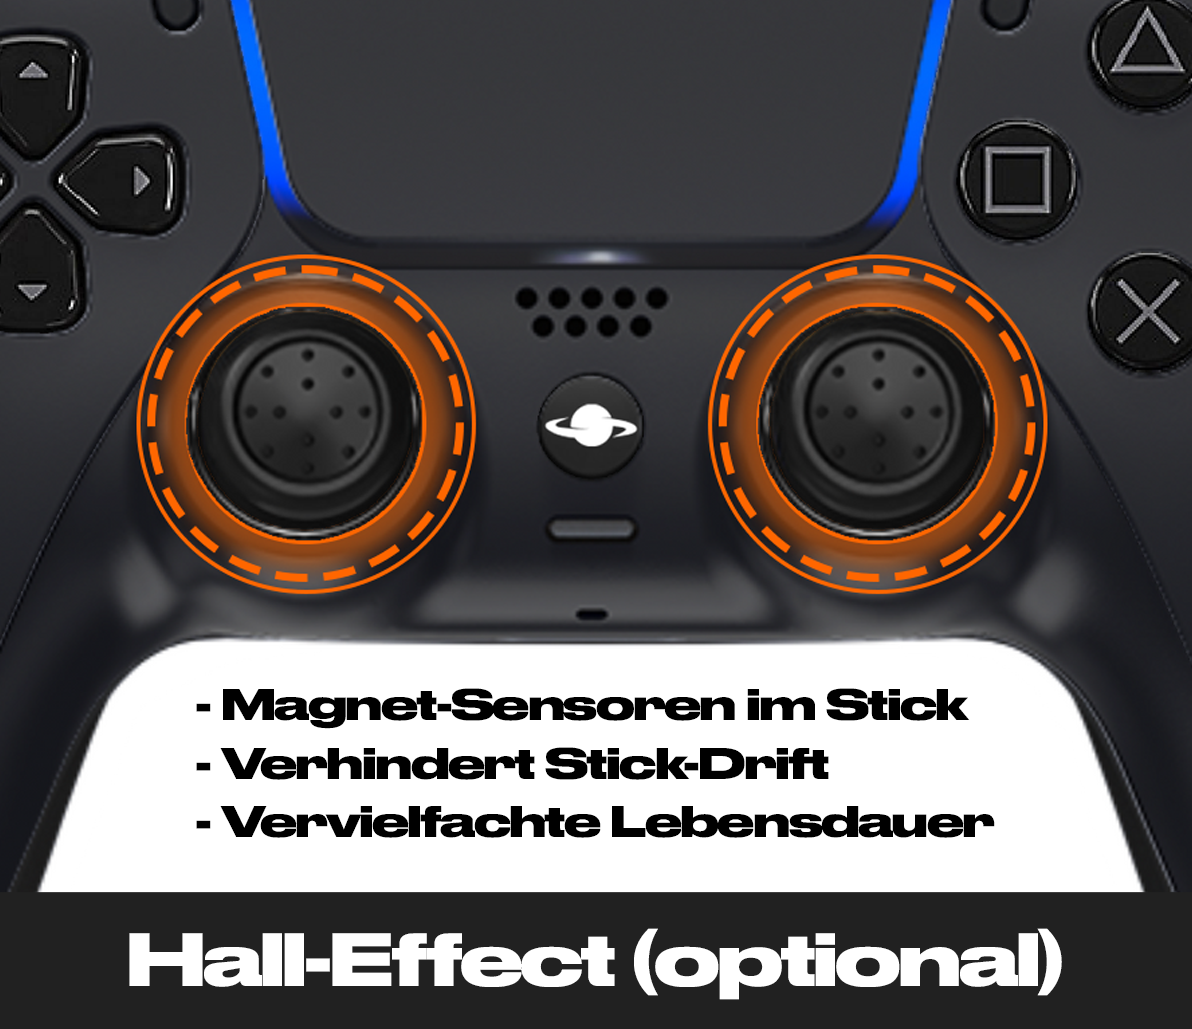 PS5 Custom Controller 'Chameleon Blau'